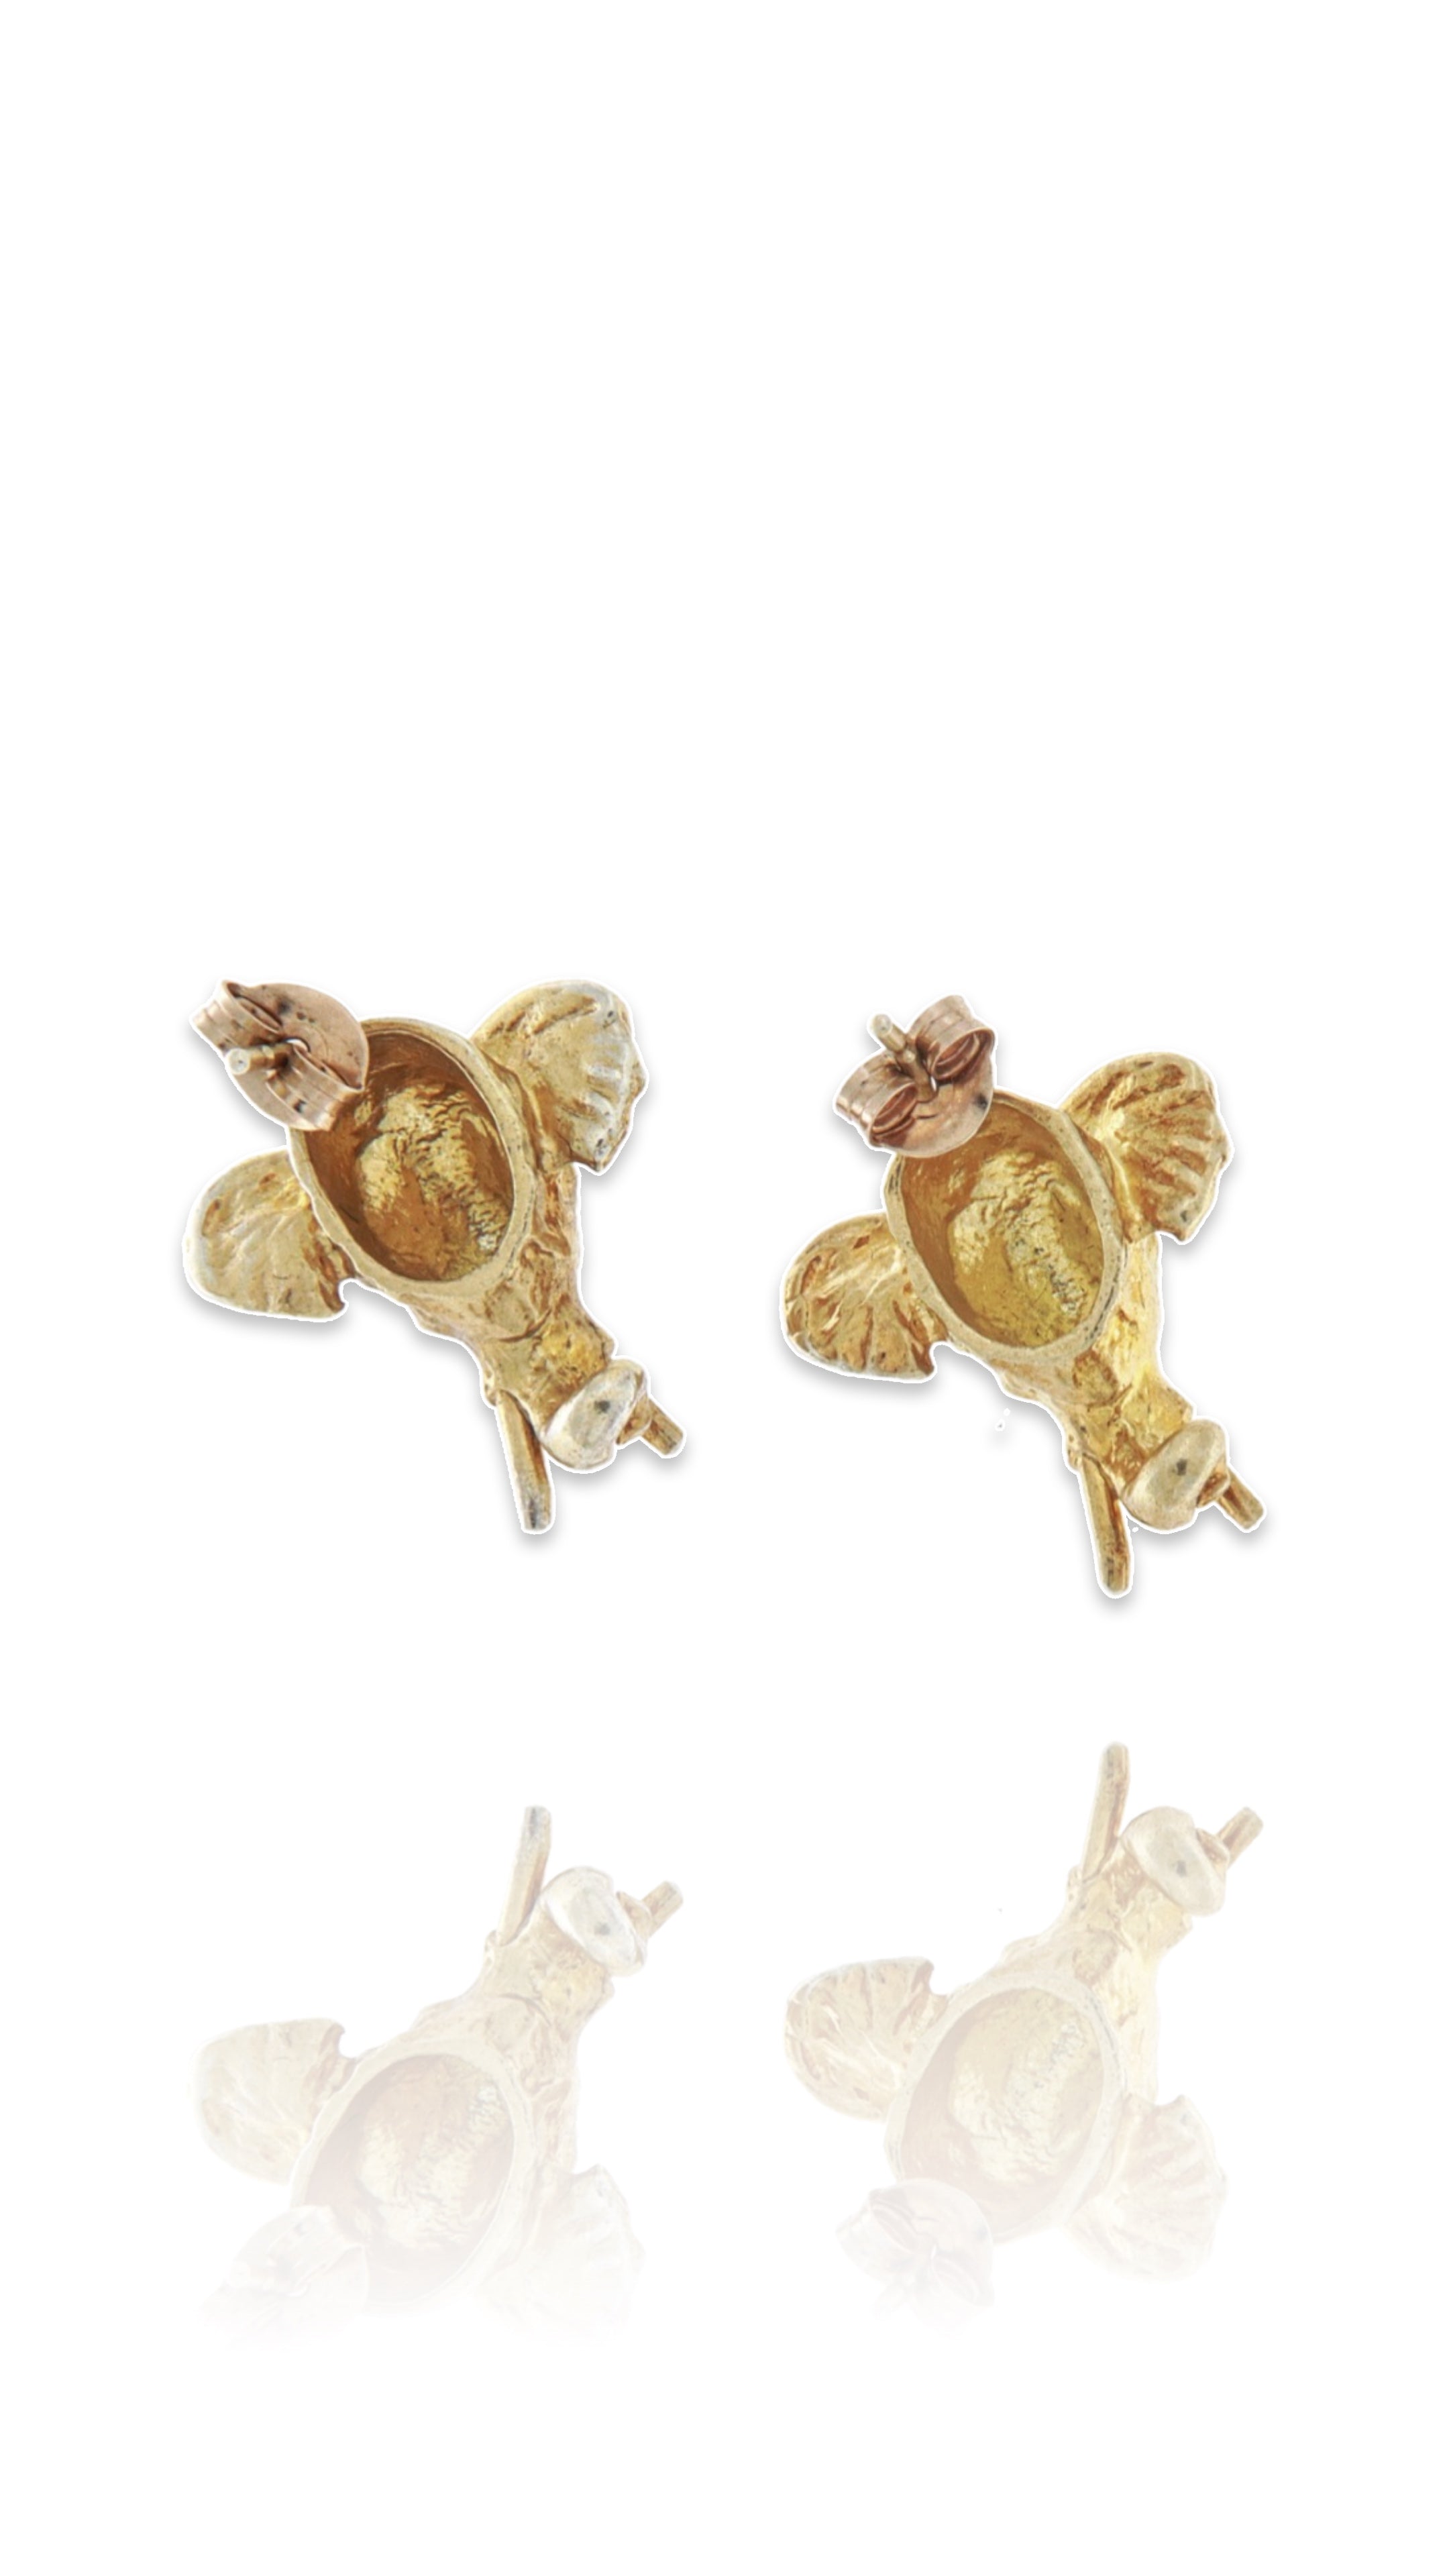 Sterling Silver Elephant earrings